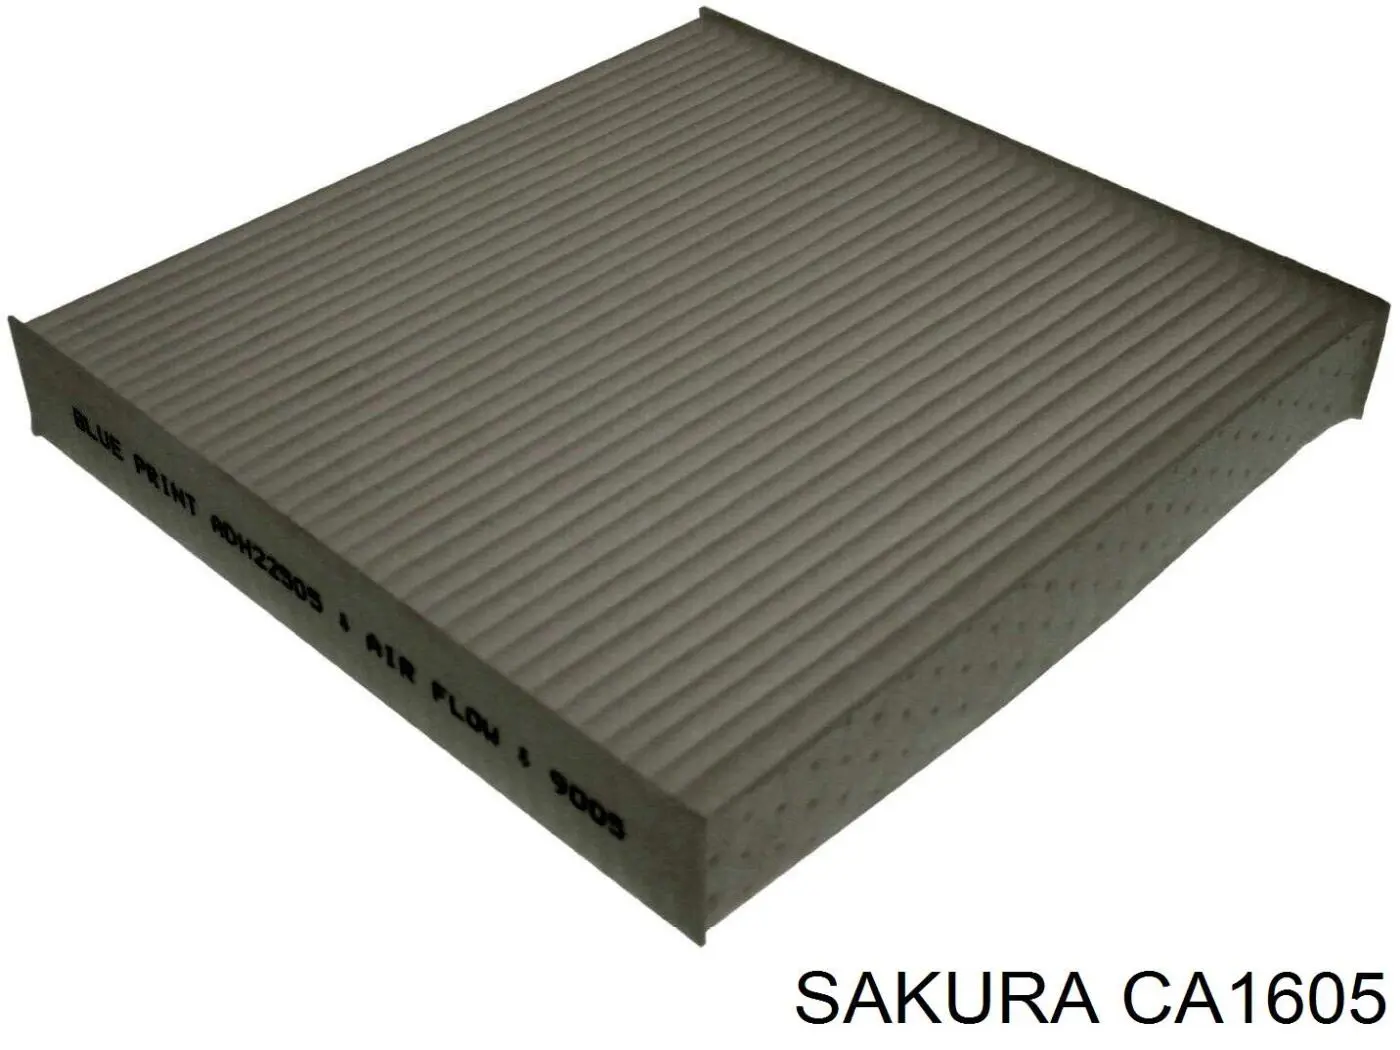 CA1605 Sakura filtro habitáculo